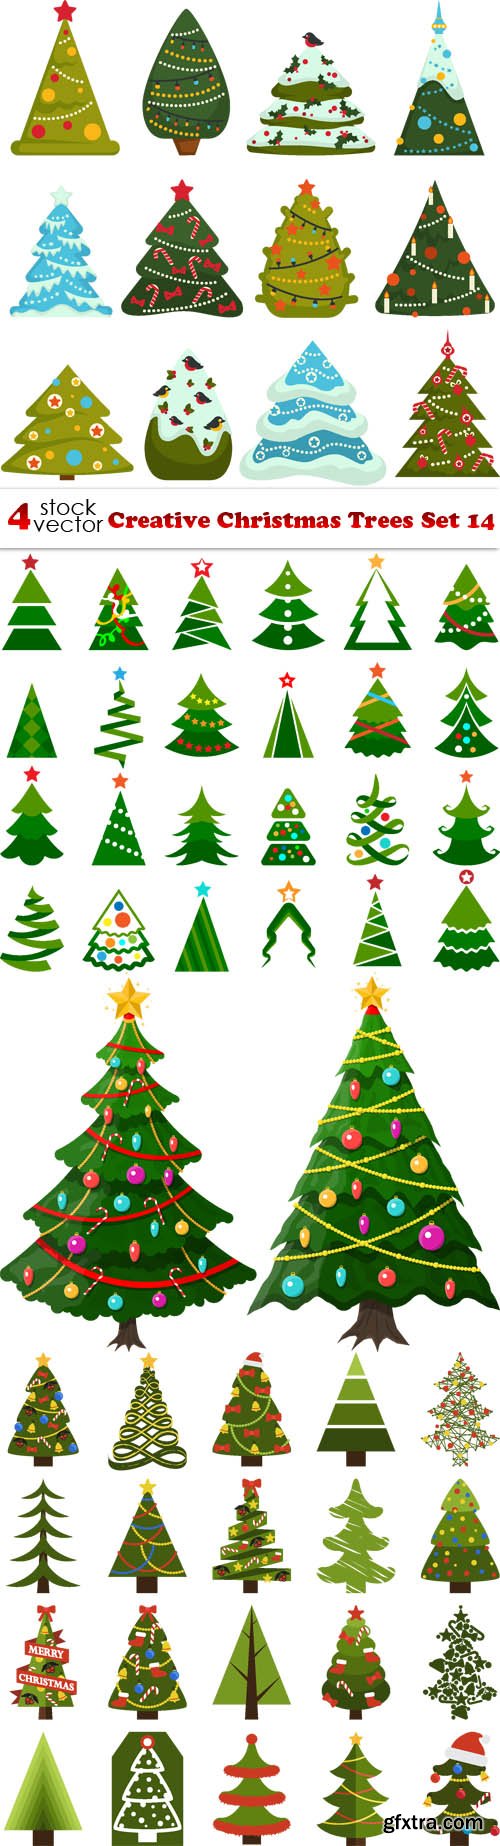 Vectors - Creative Christmas Trees Set 14